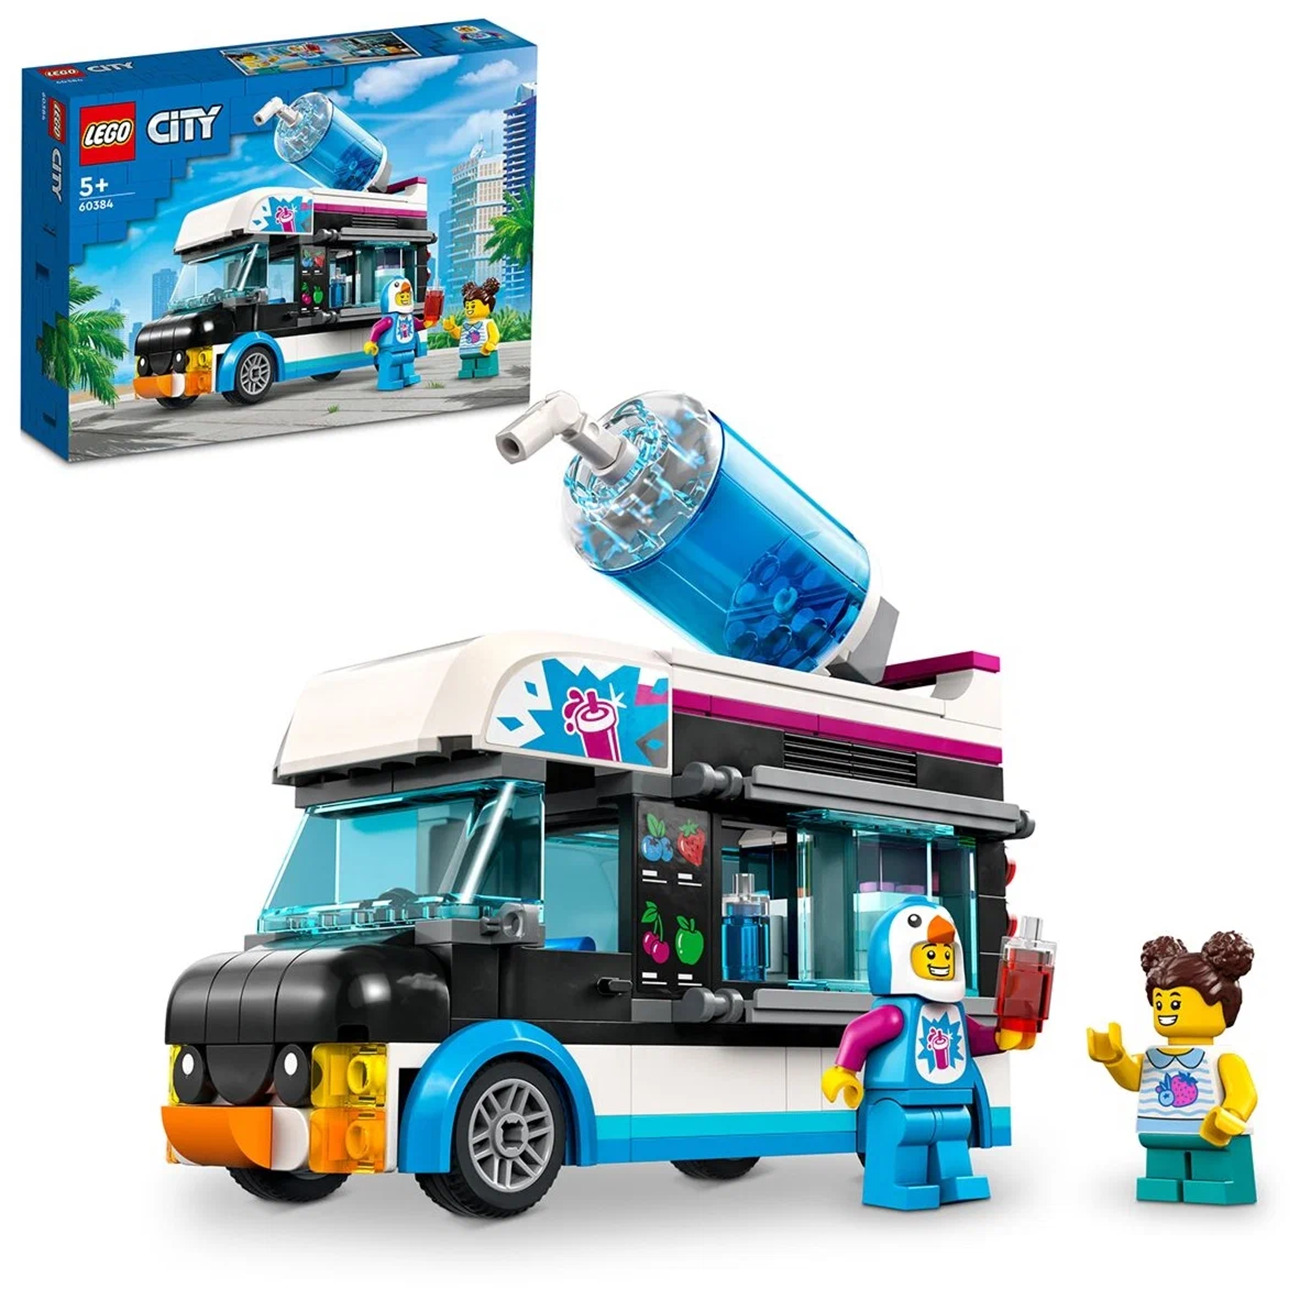 Конструктор LEGO City 60384 Фургон для шейков Пингвин, 194 детали, 60384 - купить в GoodBuy, цена на Мегамаркет